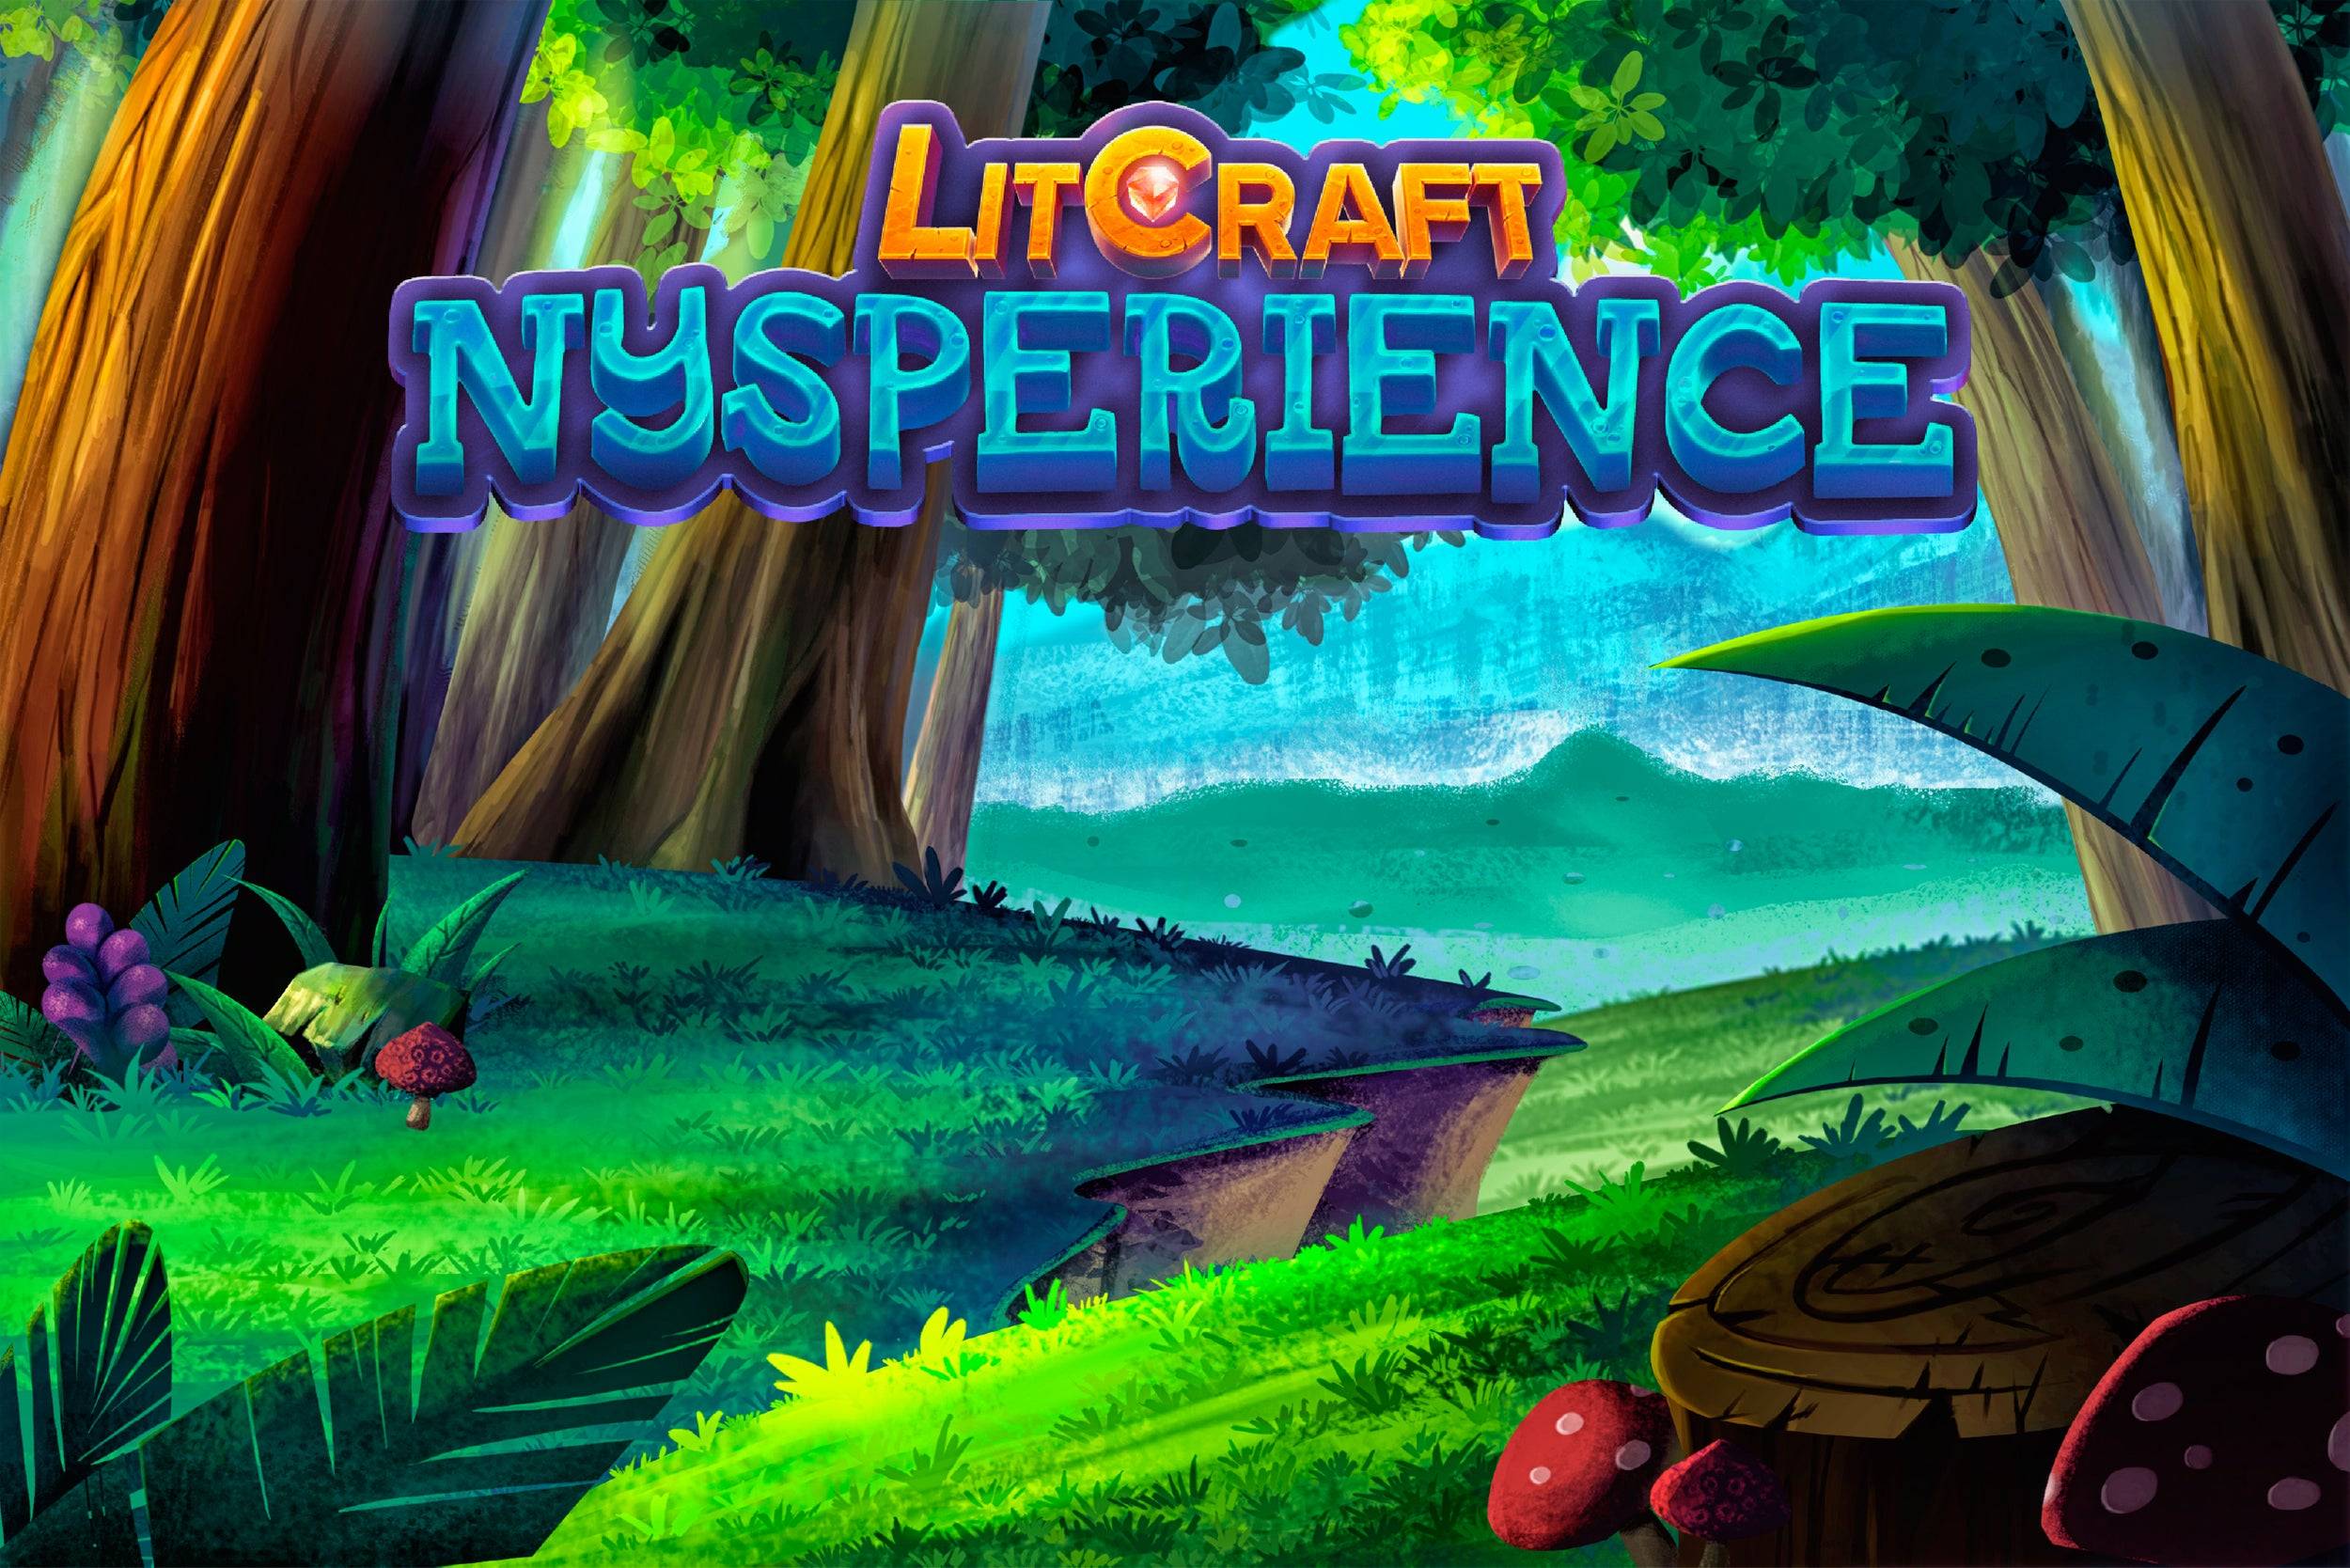 LitCraft: Nysperience - Reseña del juego